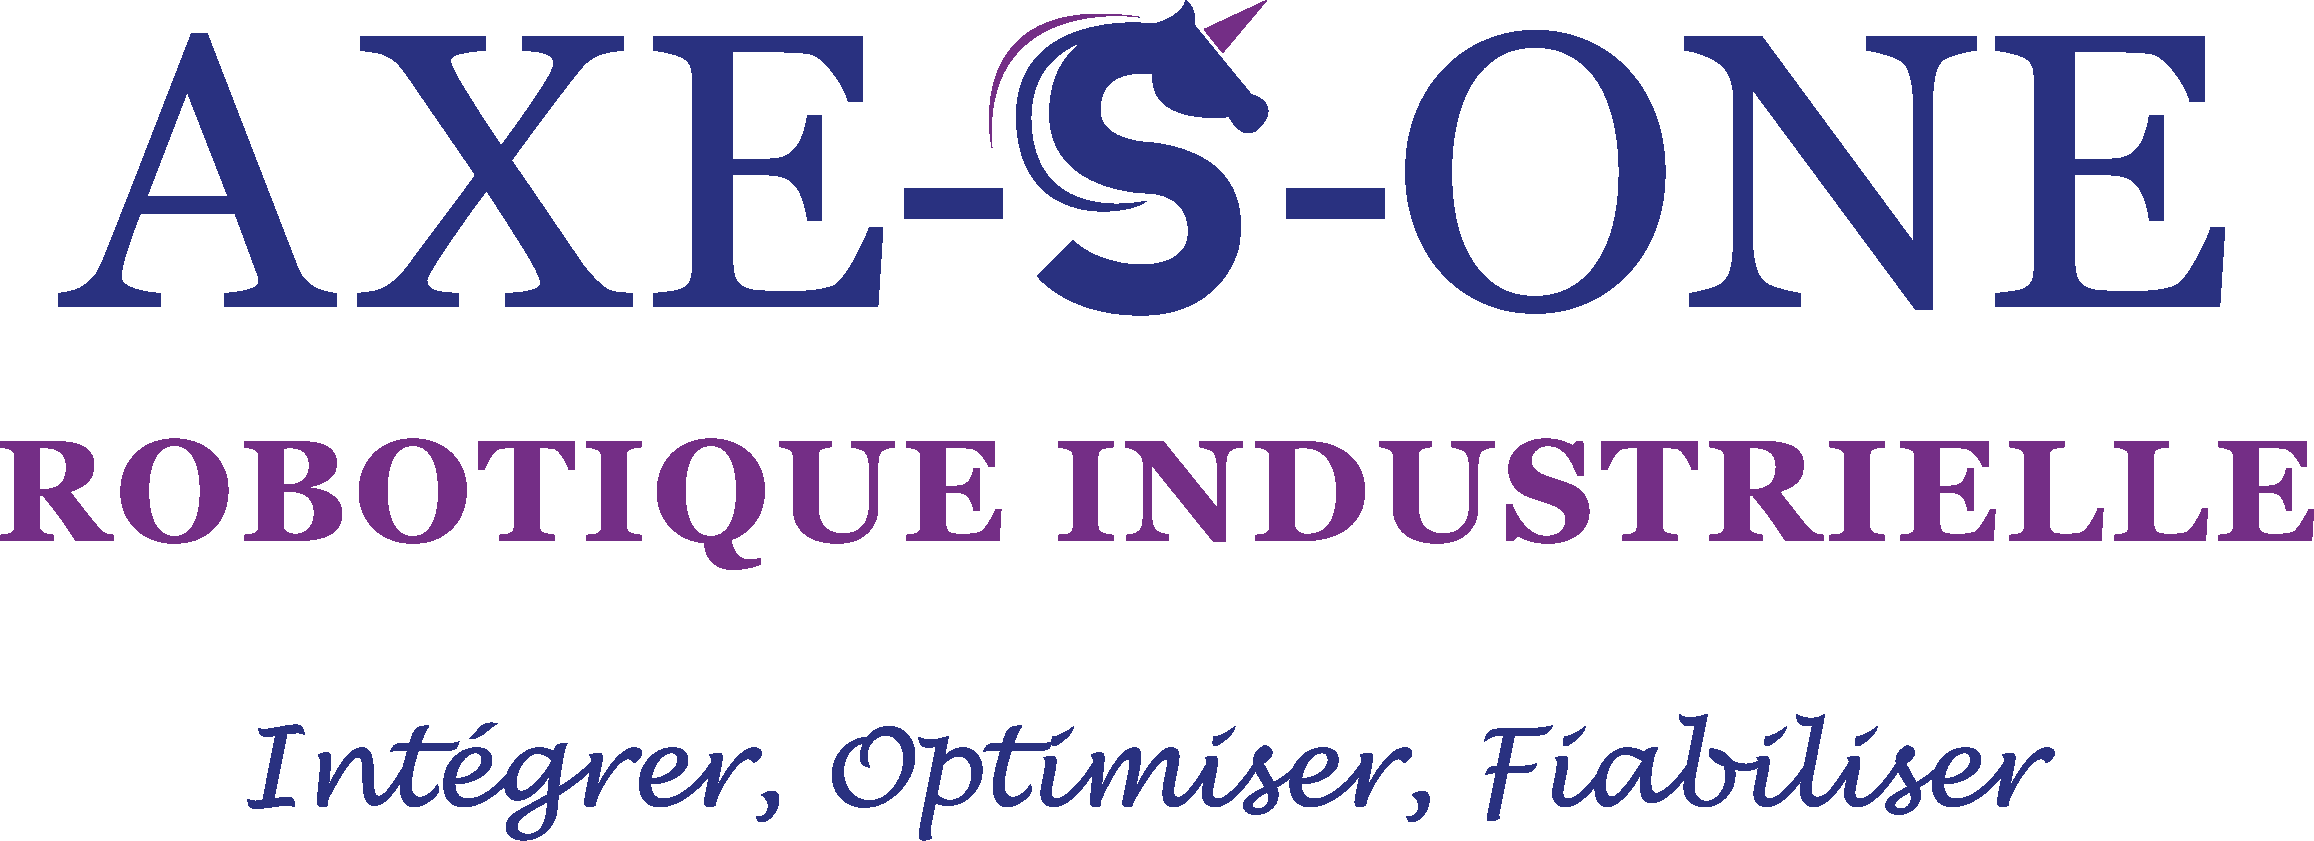 Logo Axe-S-One Robotique Industrielle